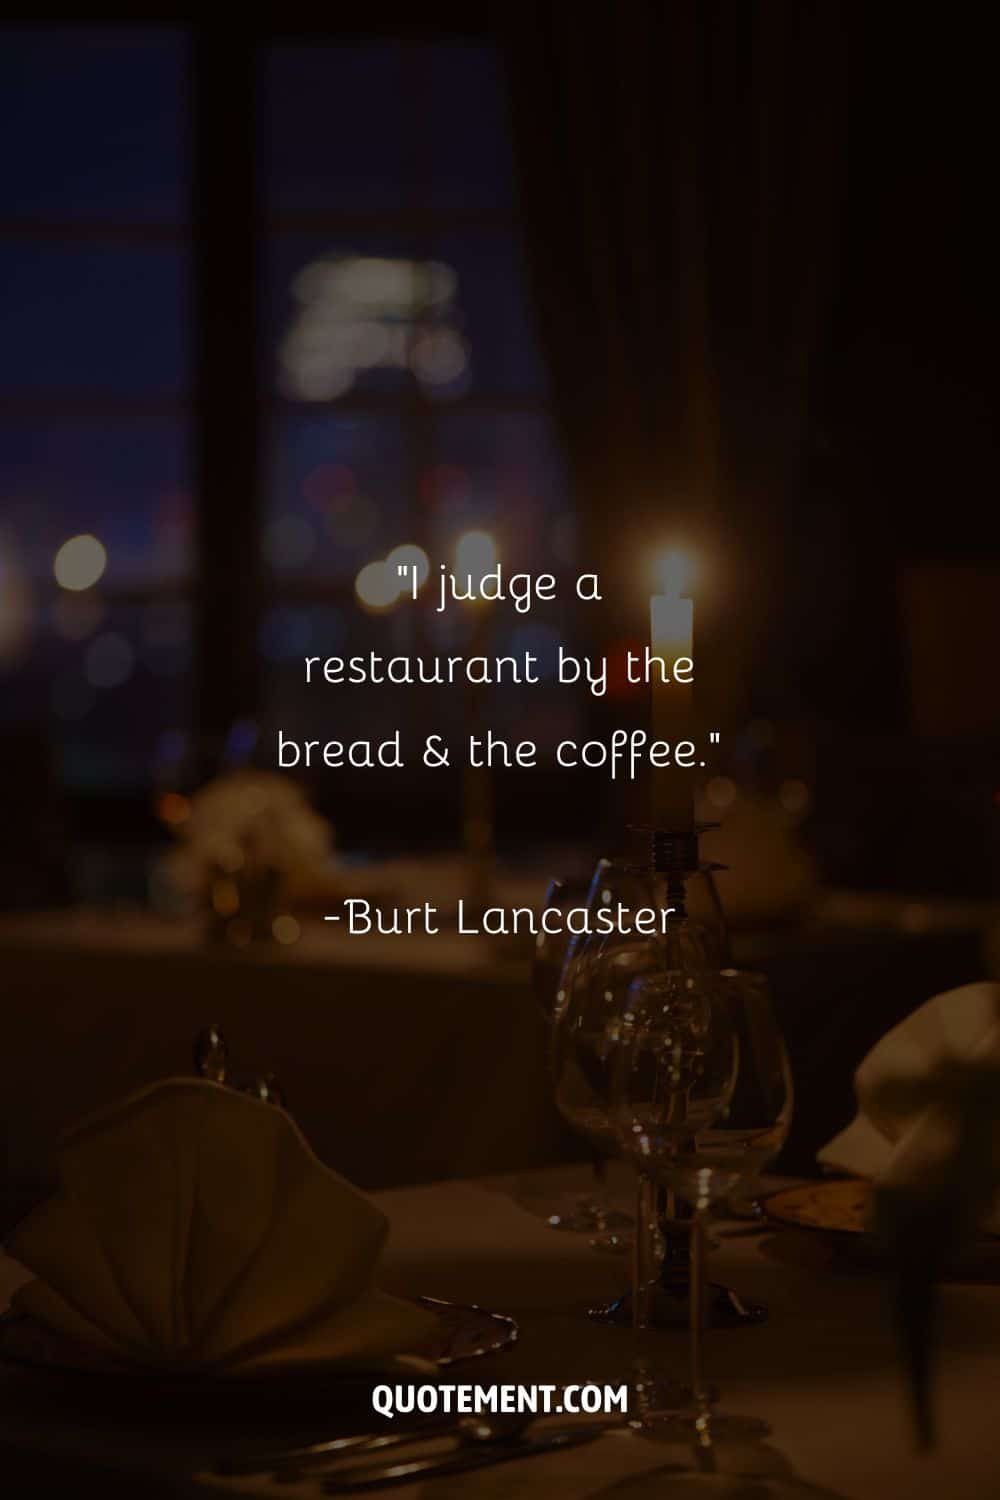 Imagen de un elegante servicio de mesa que representa una cita sobre restaurantes